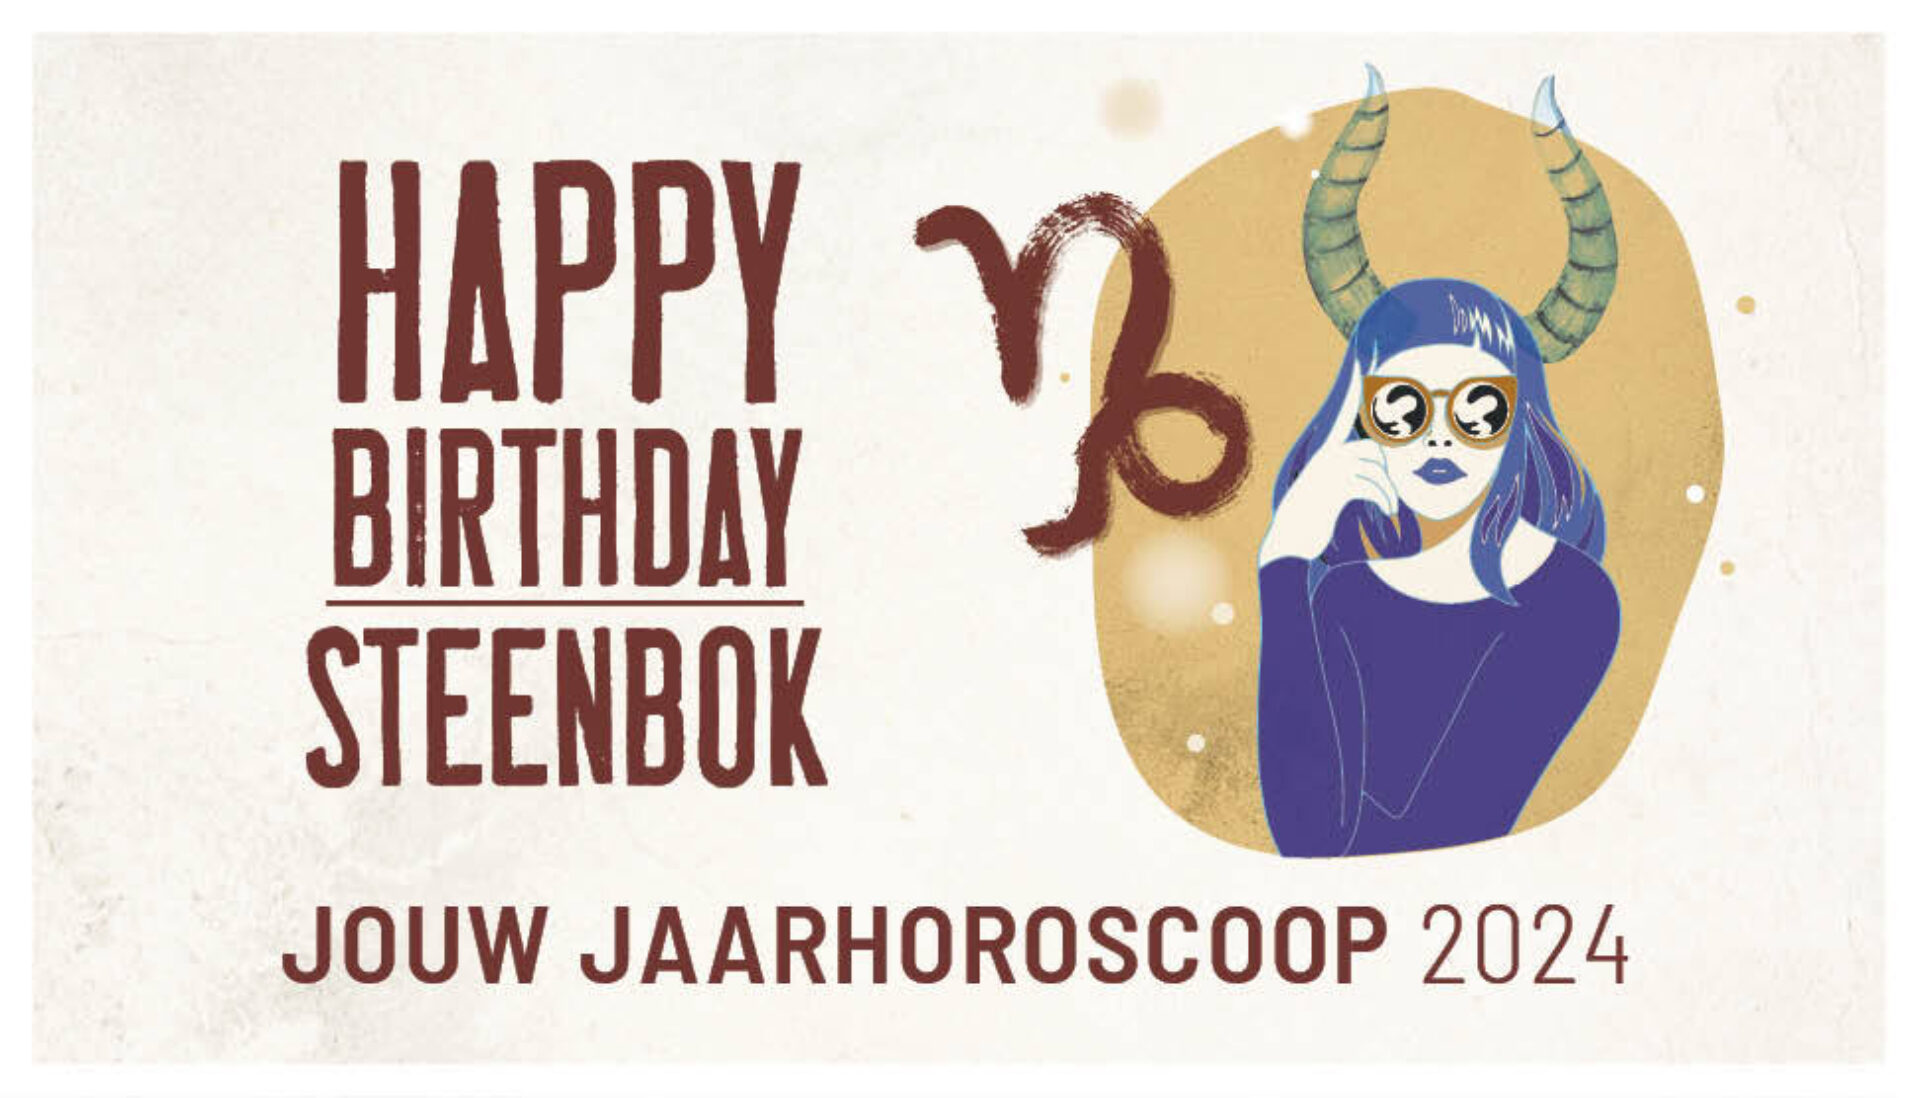 Steenbok, jouw jaarhoroscoop 2024: gelukkige verjaardag!